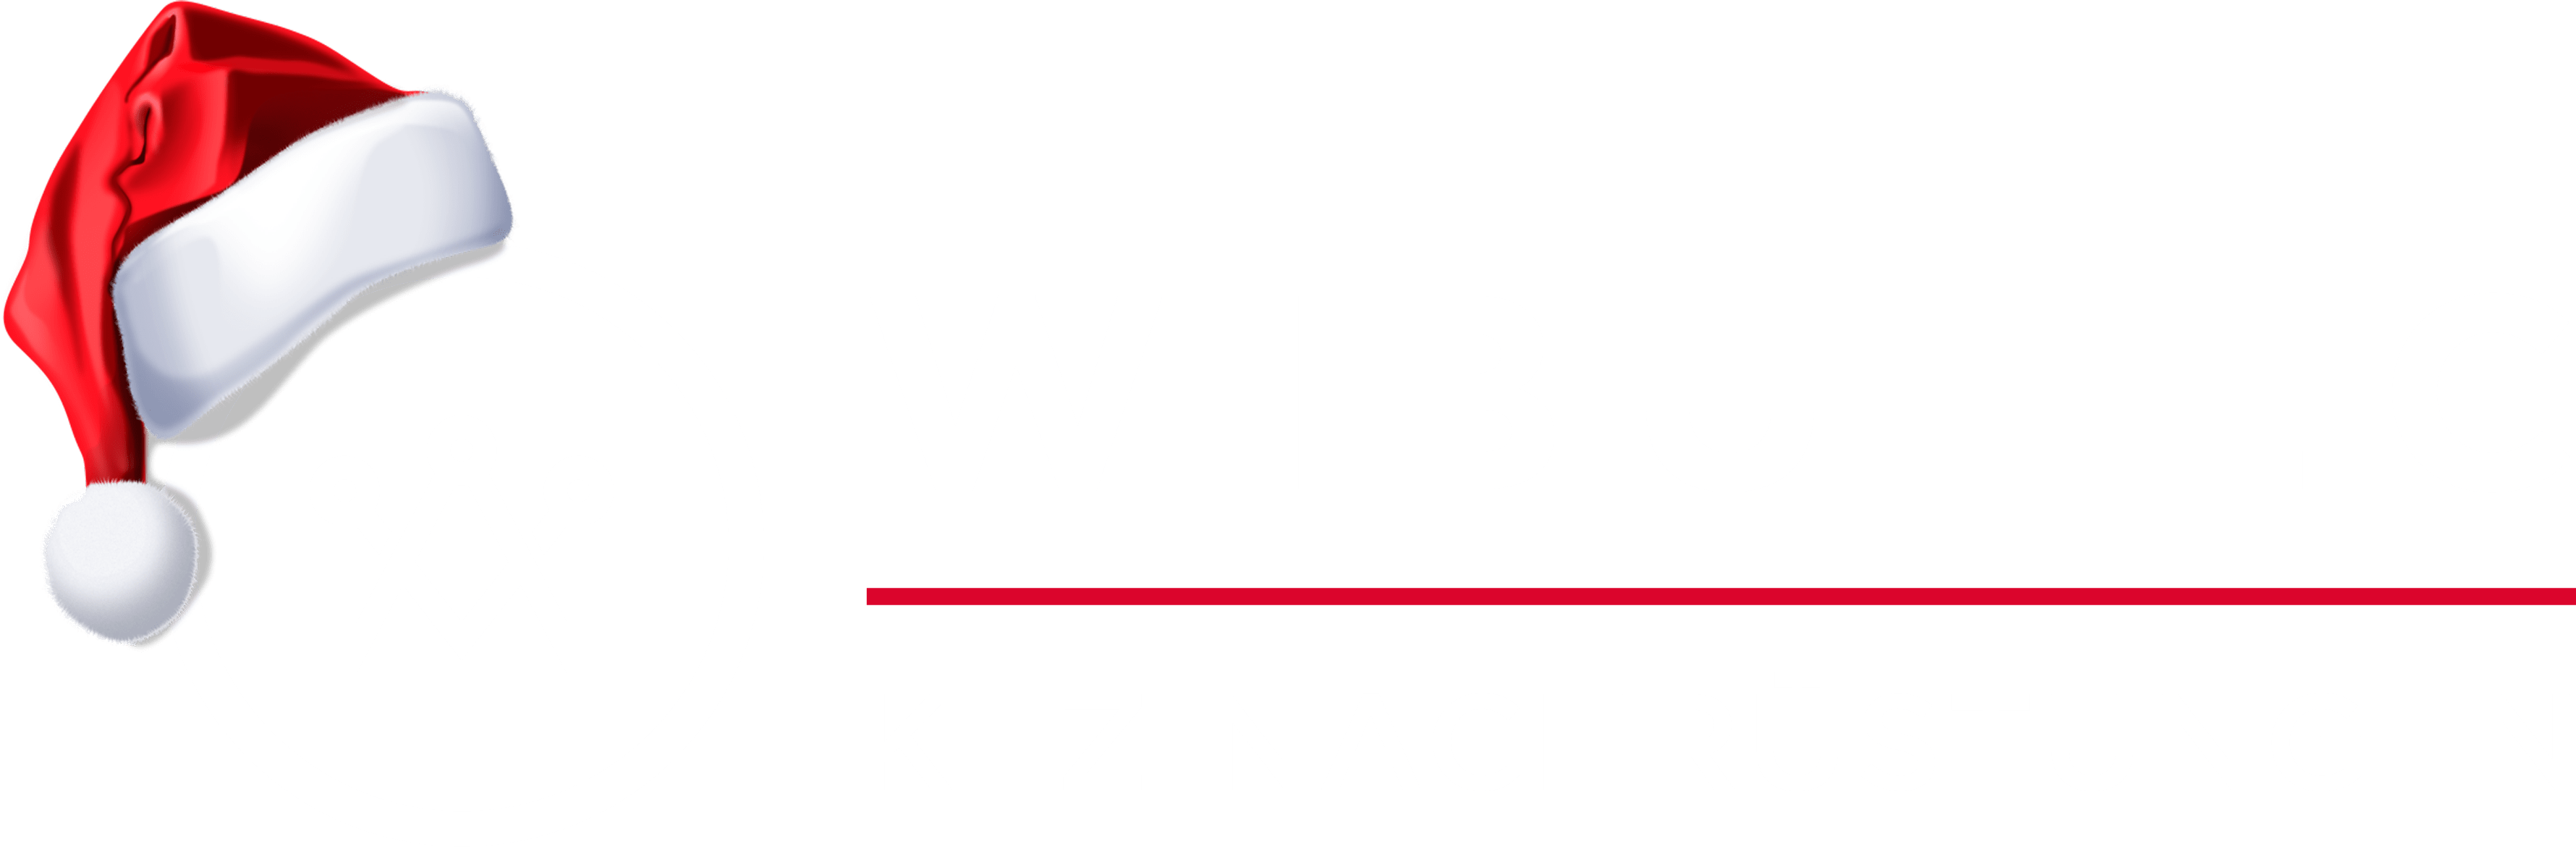 Wibutec KFZ-Nachrüstungen